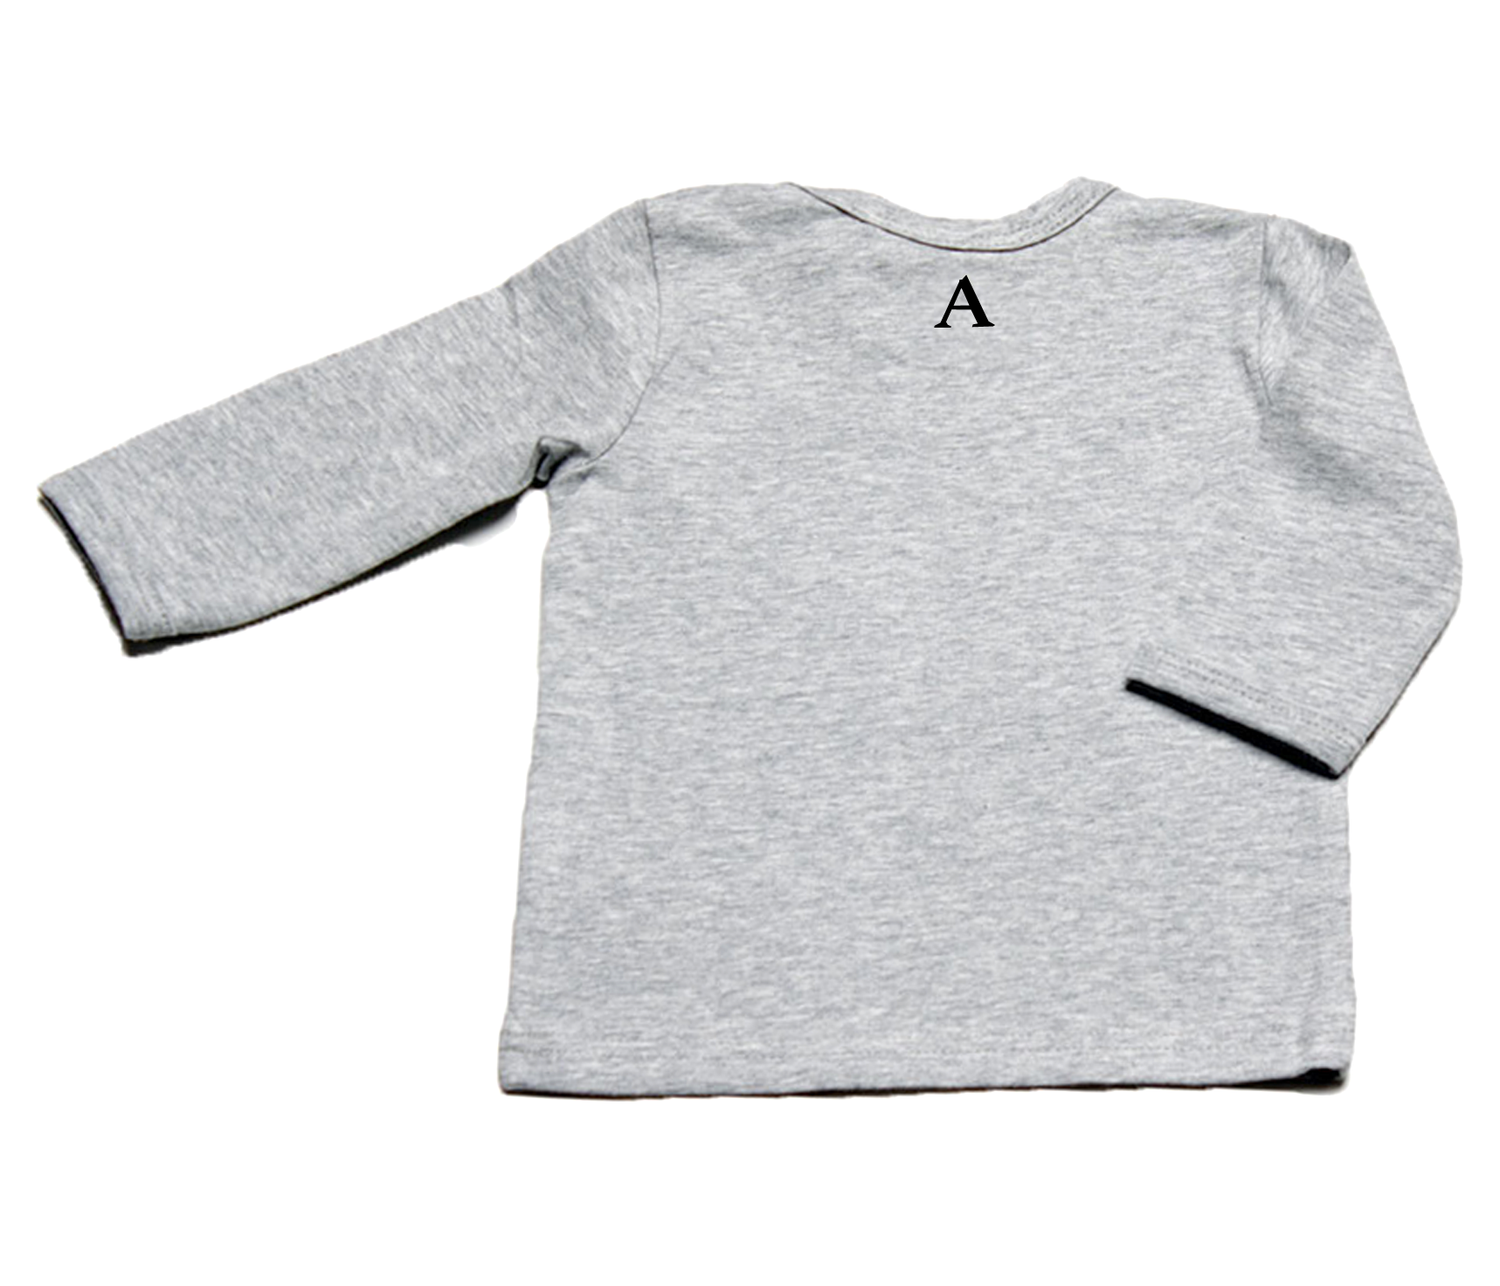 Auryn - Shirt grau Breze schwarz - AURYN Shop